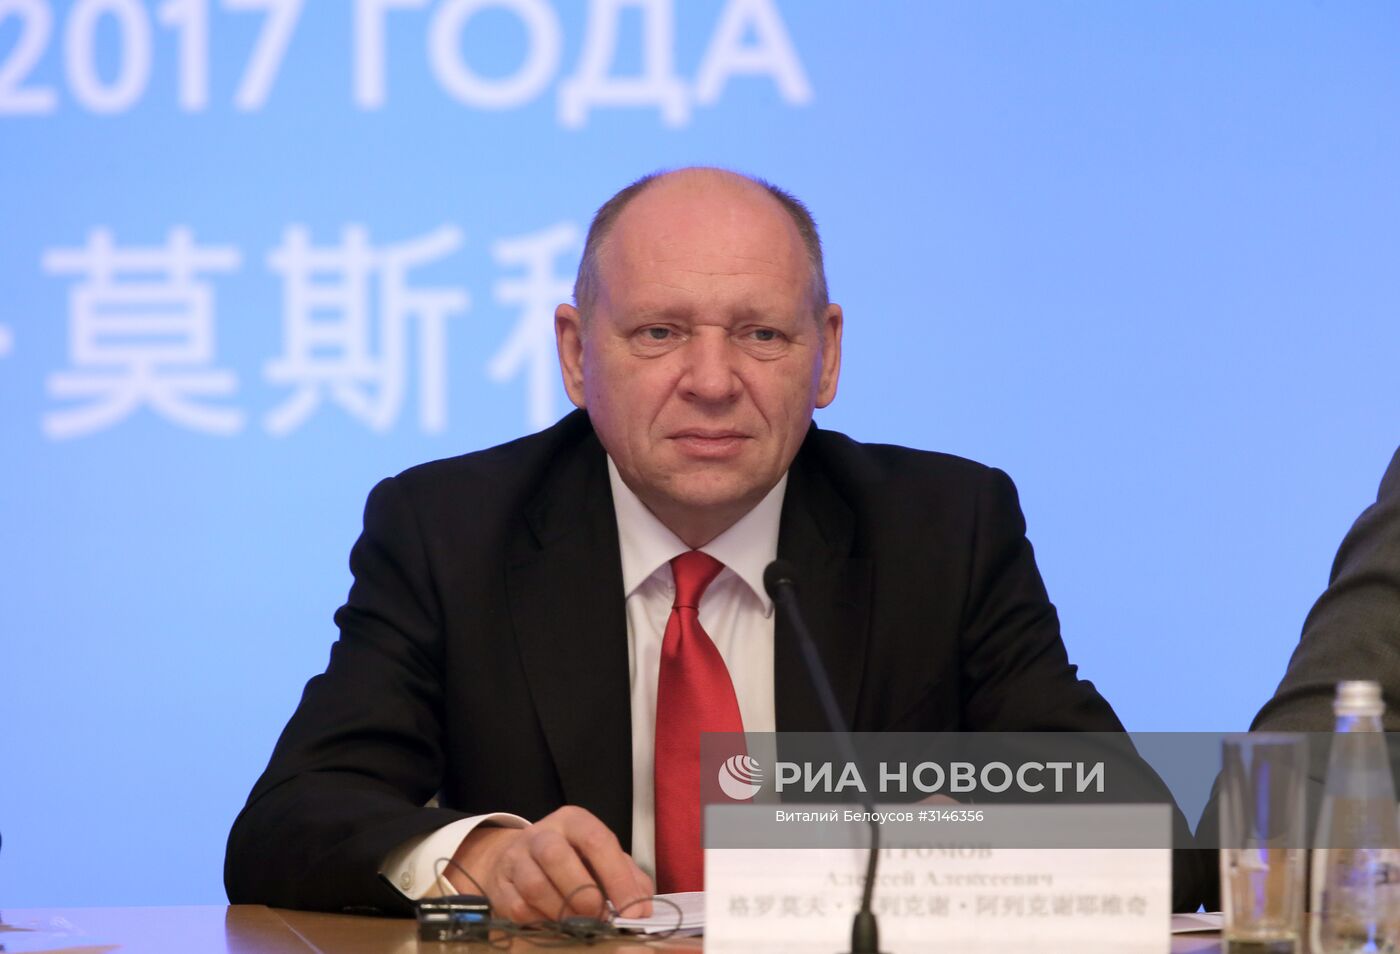 Третий форум СМИ России и Китая